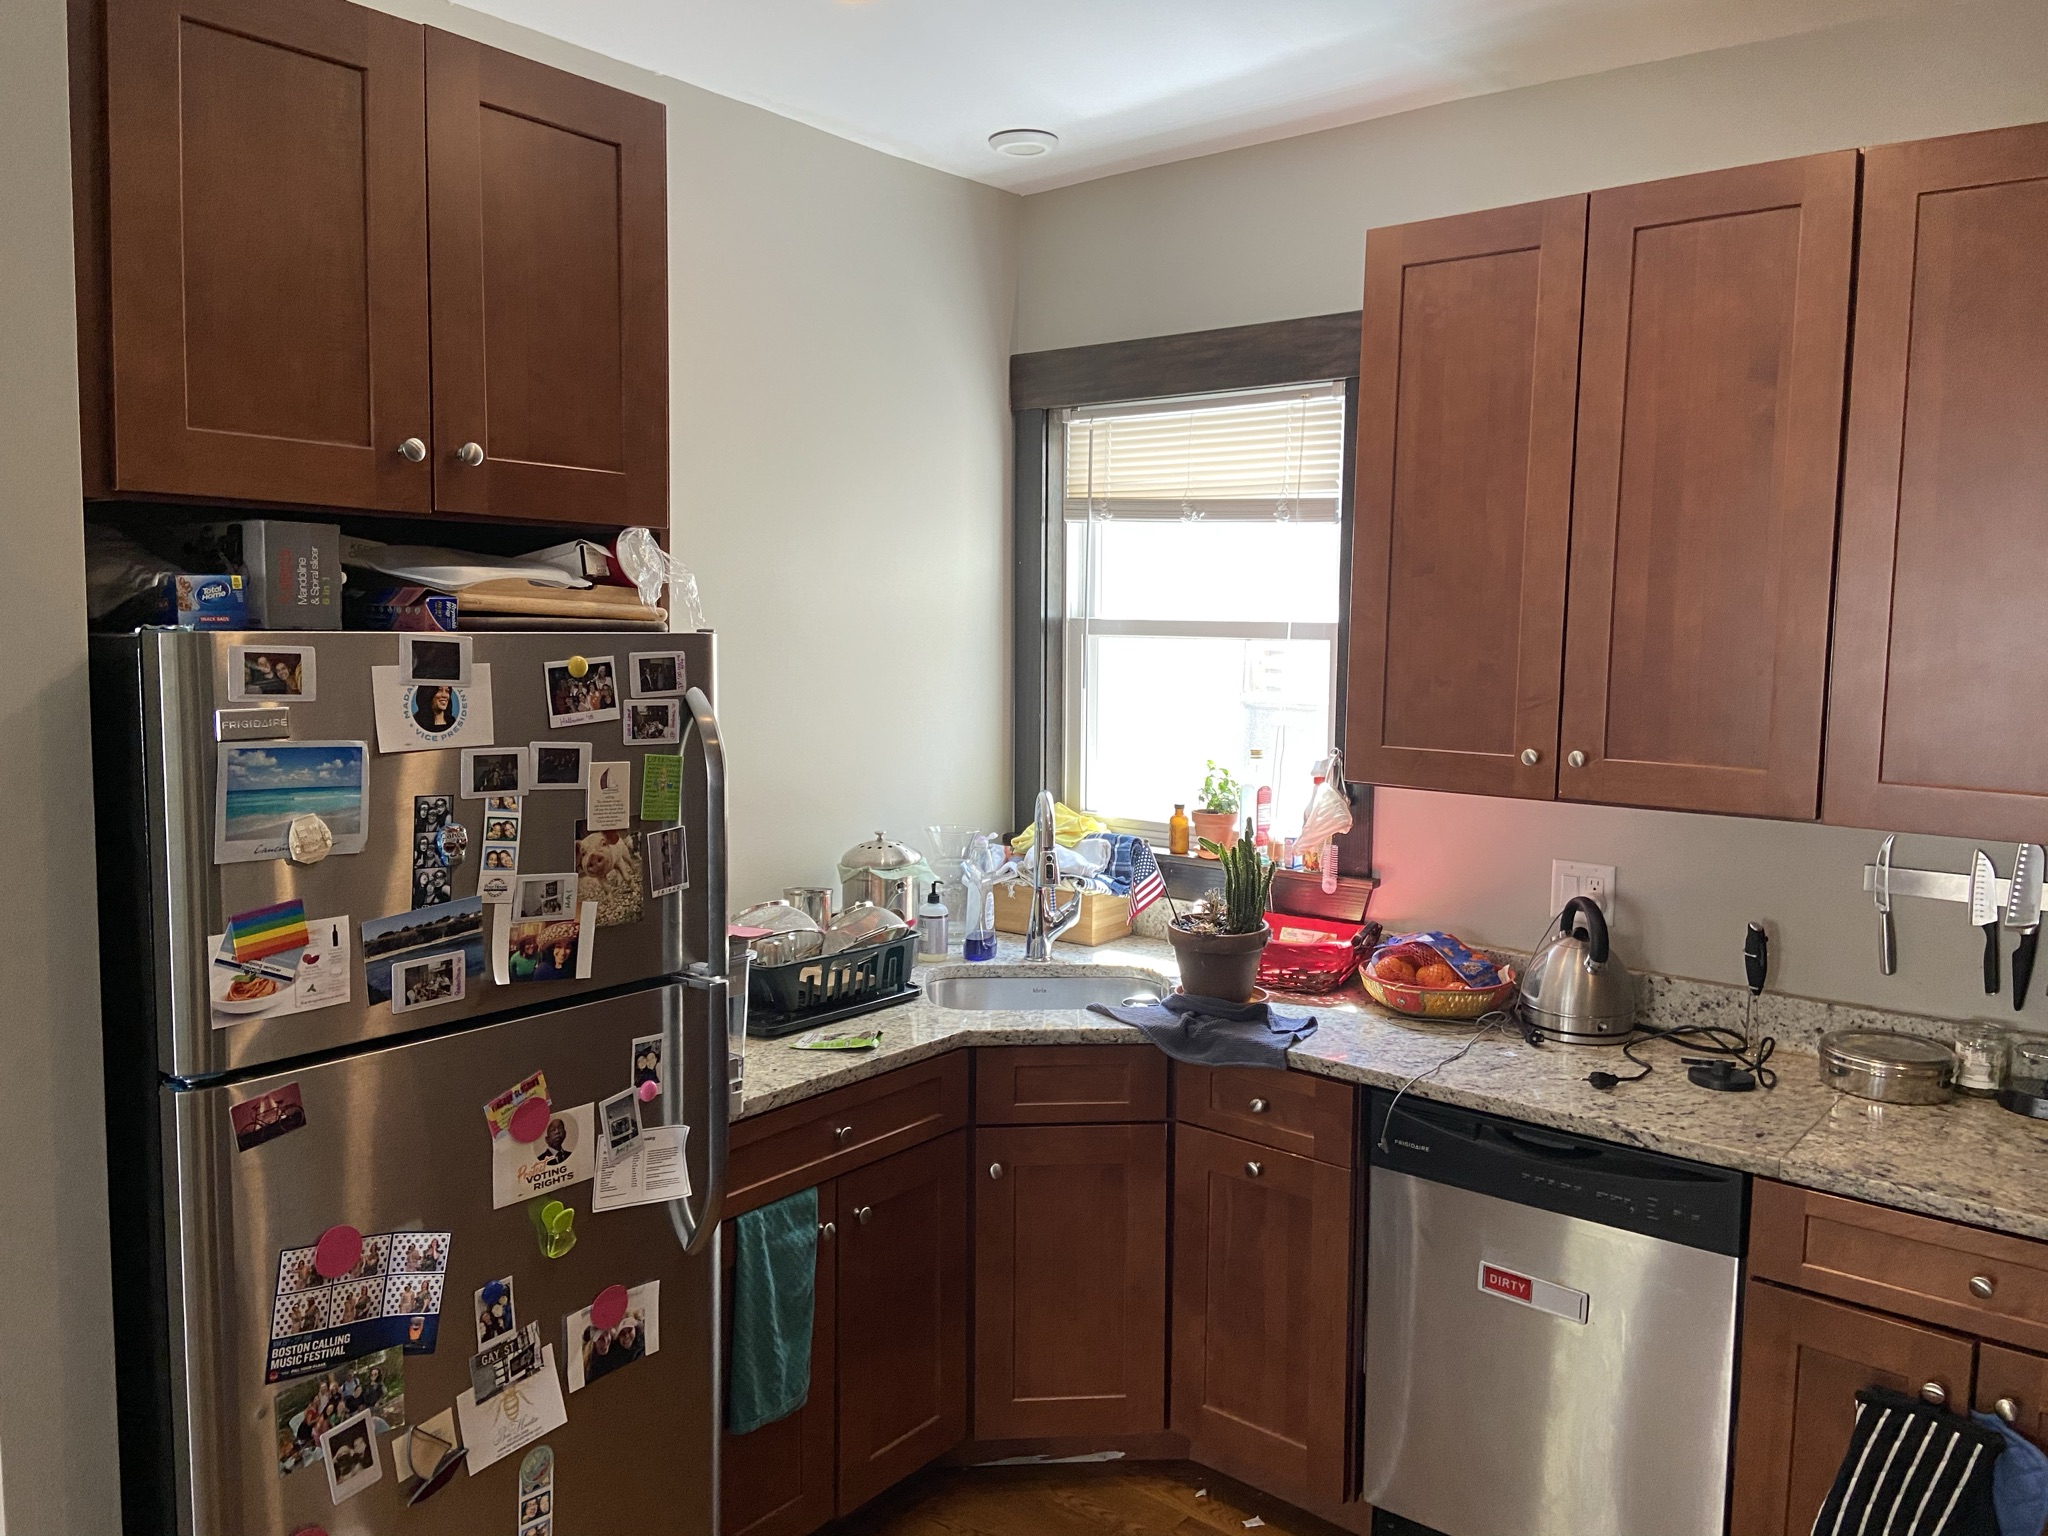 Photos of apartment on Creighton St.,Boston MA 02130